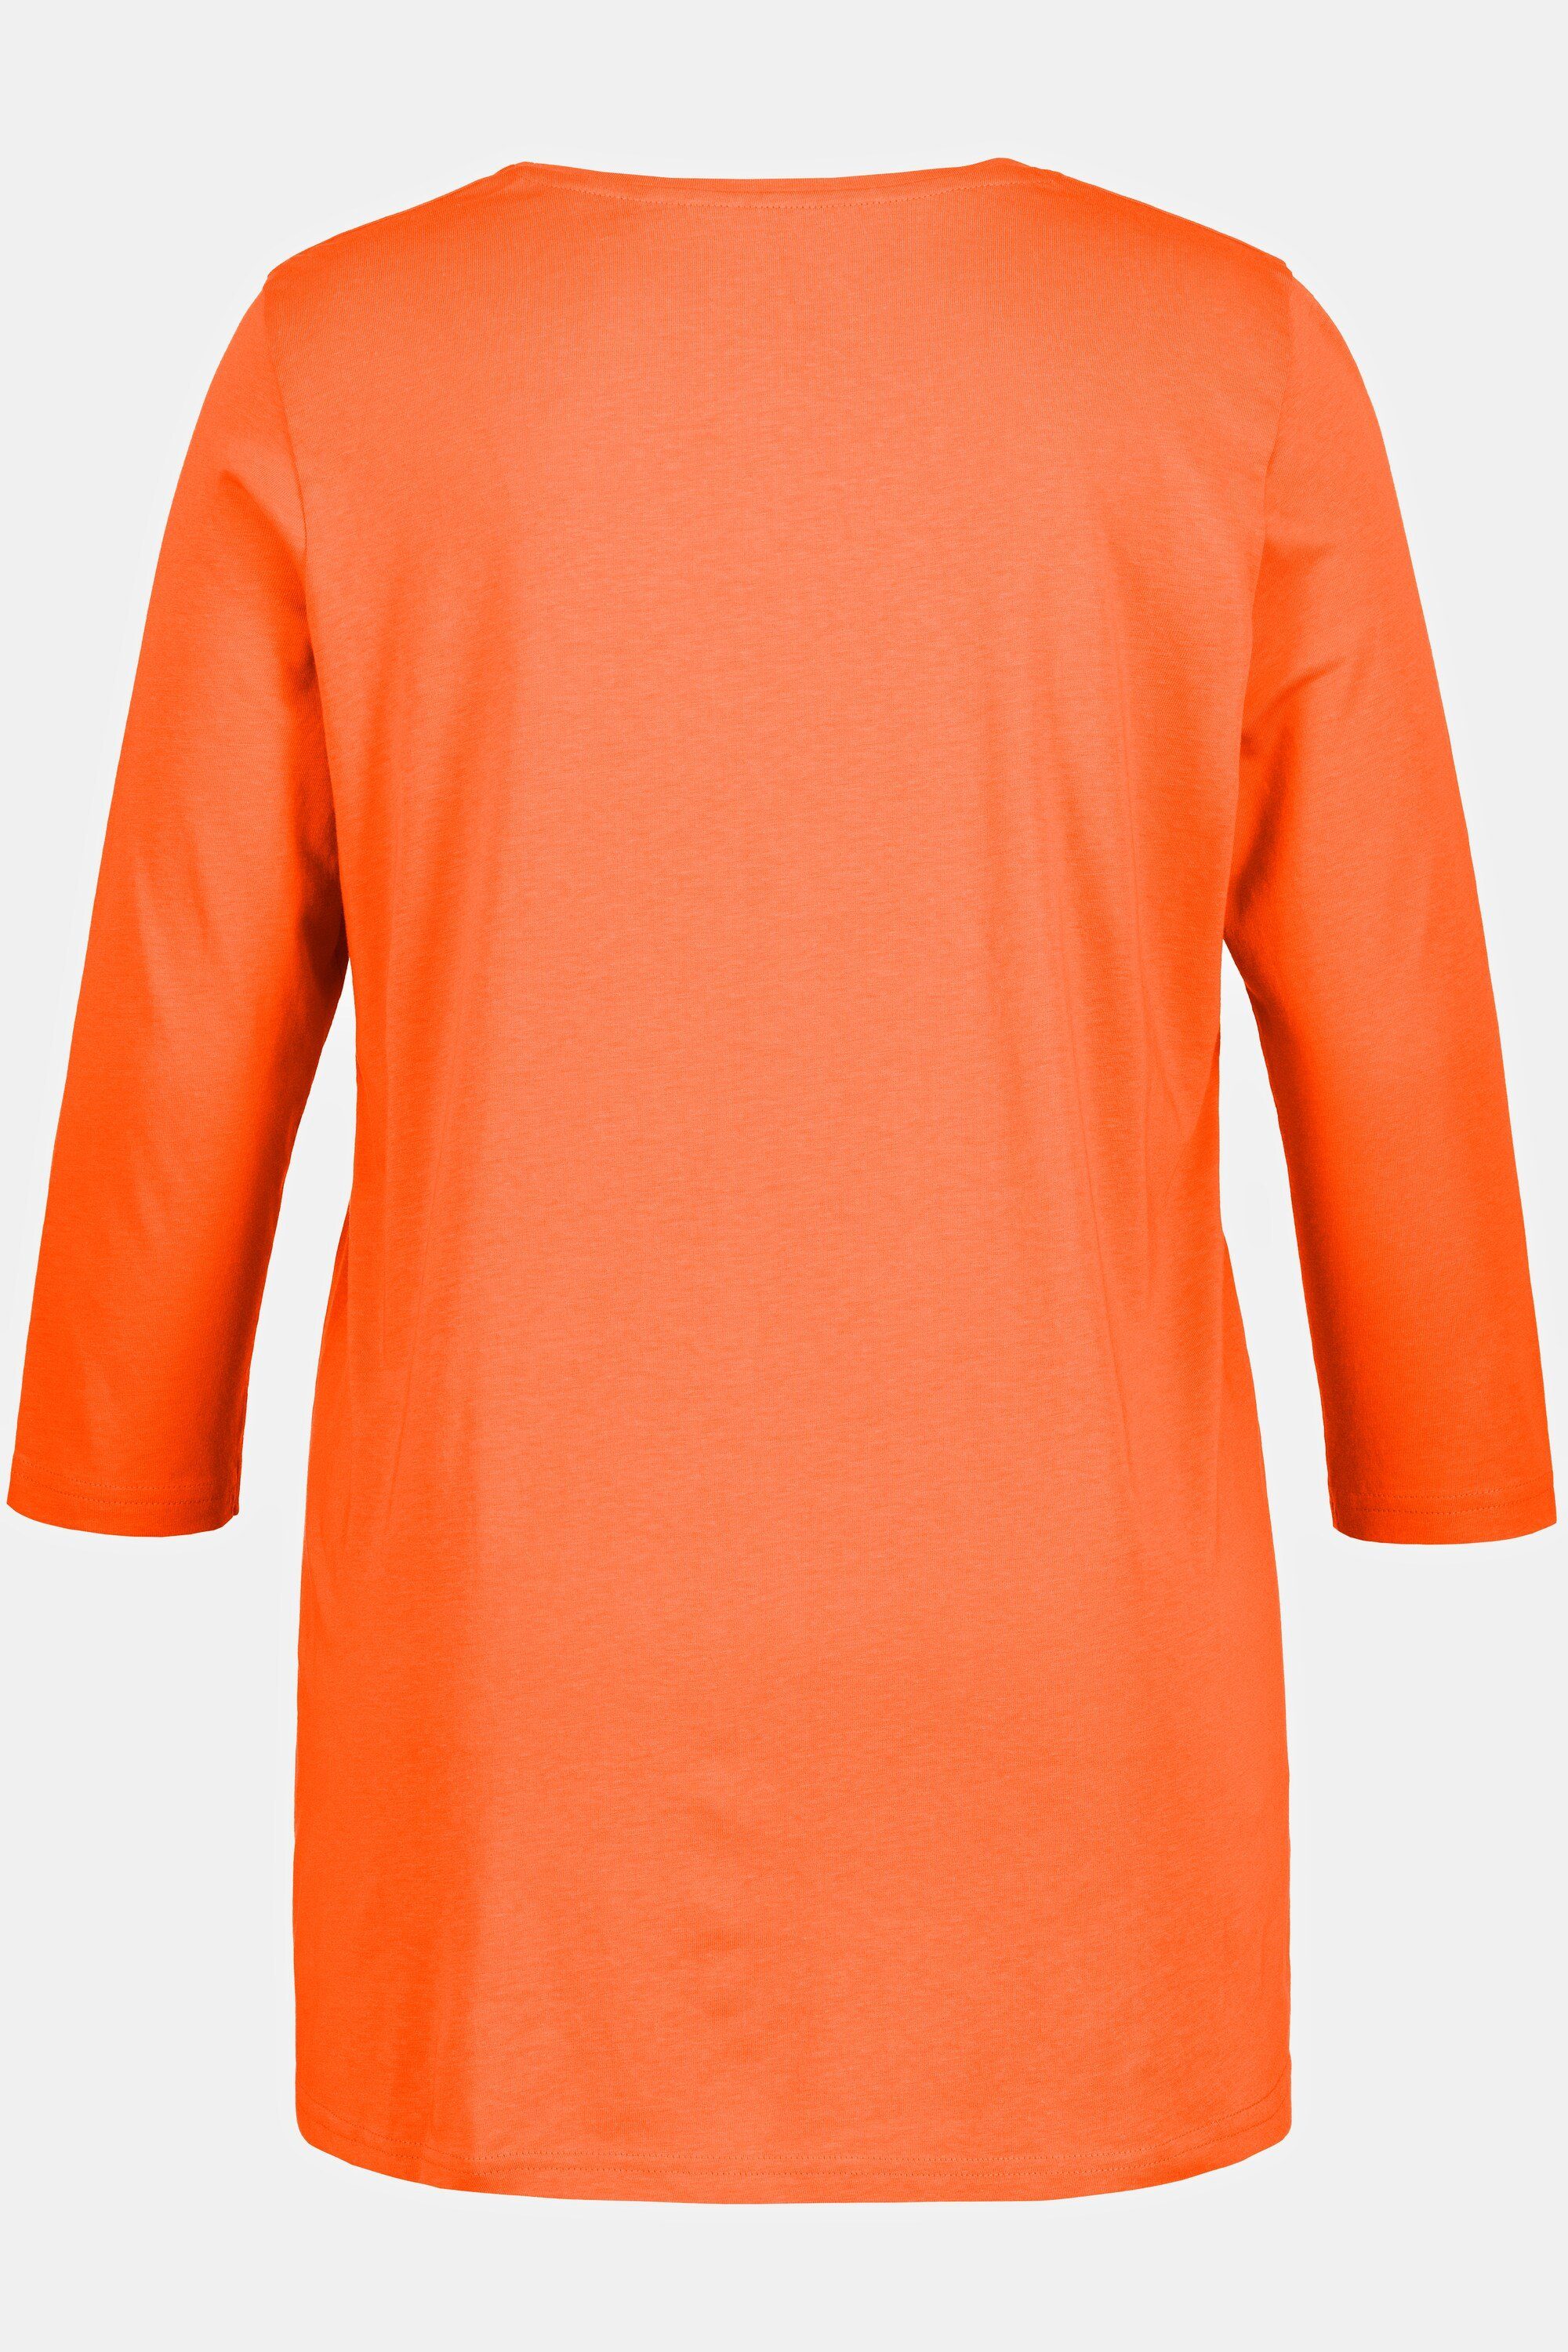 A-Linie Ulla Zierfalten 3/4-Arm Popken Shirt Rundhalsshirt orange Rundhals